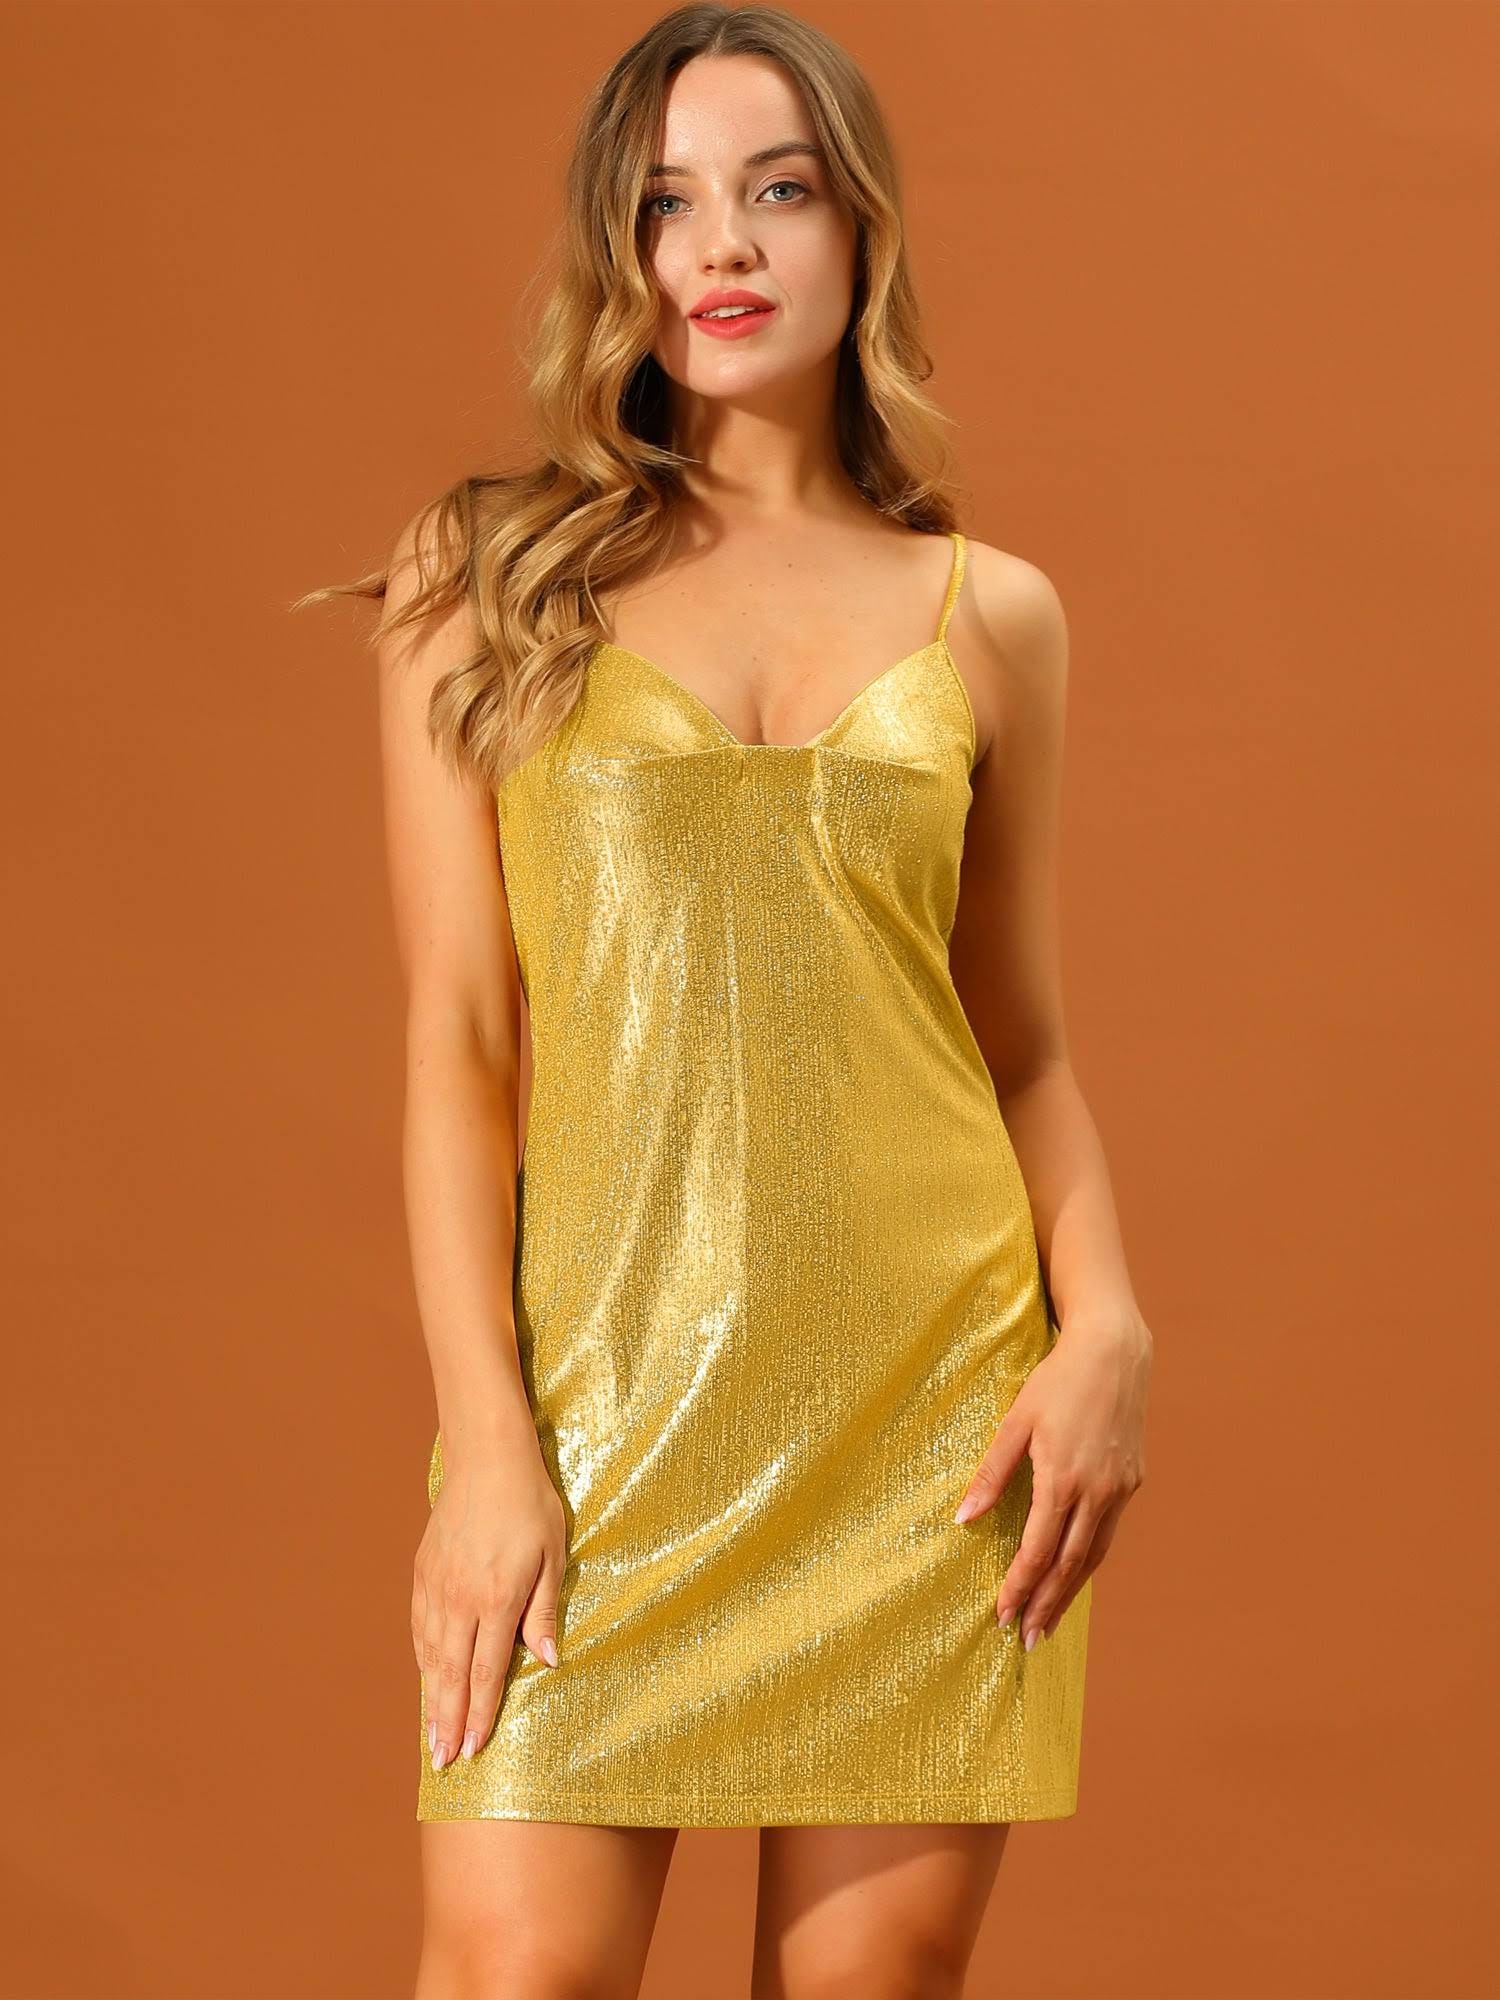 Stylish Gold Metallic Spaghetti Strap Dress | Image